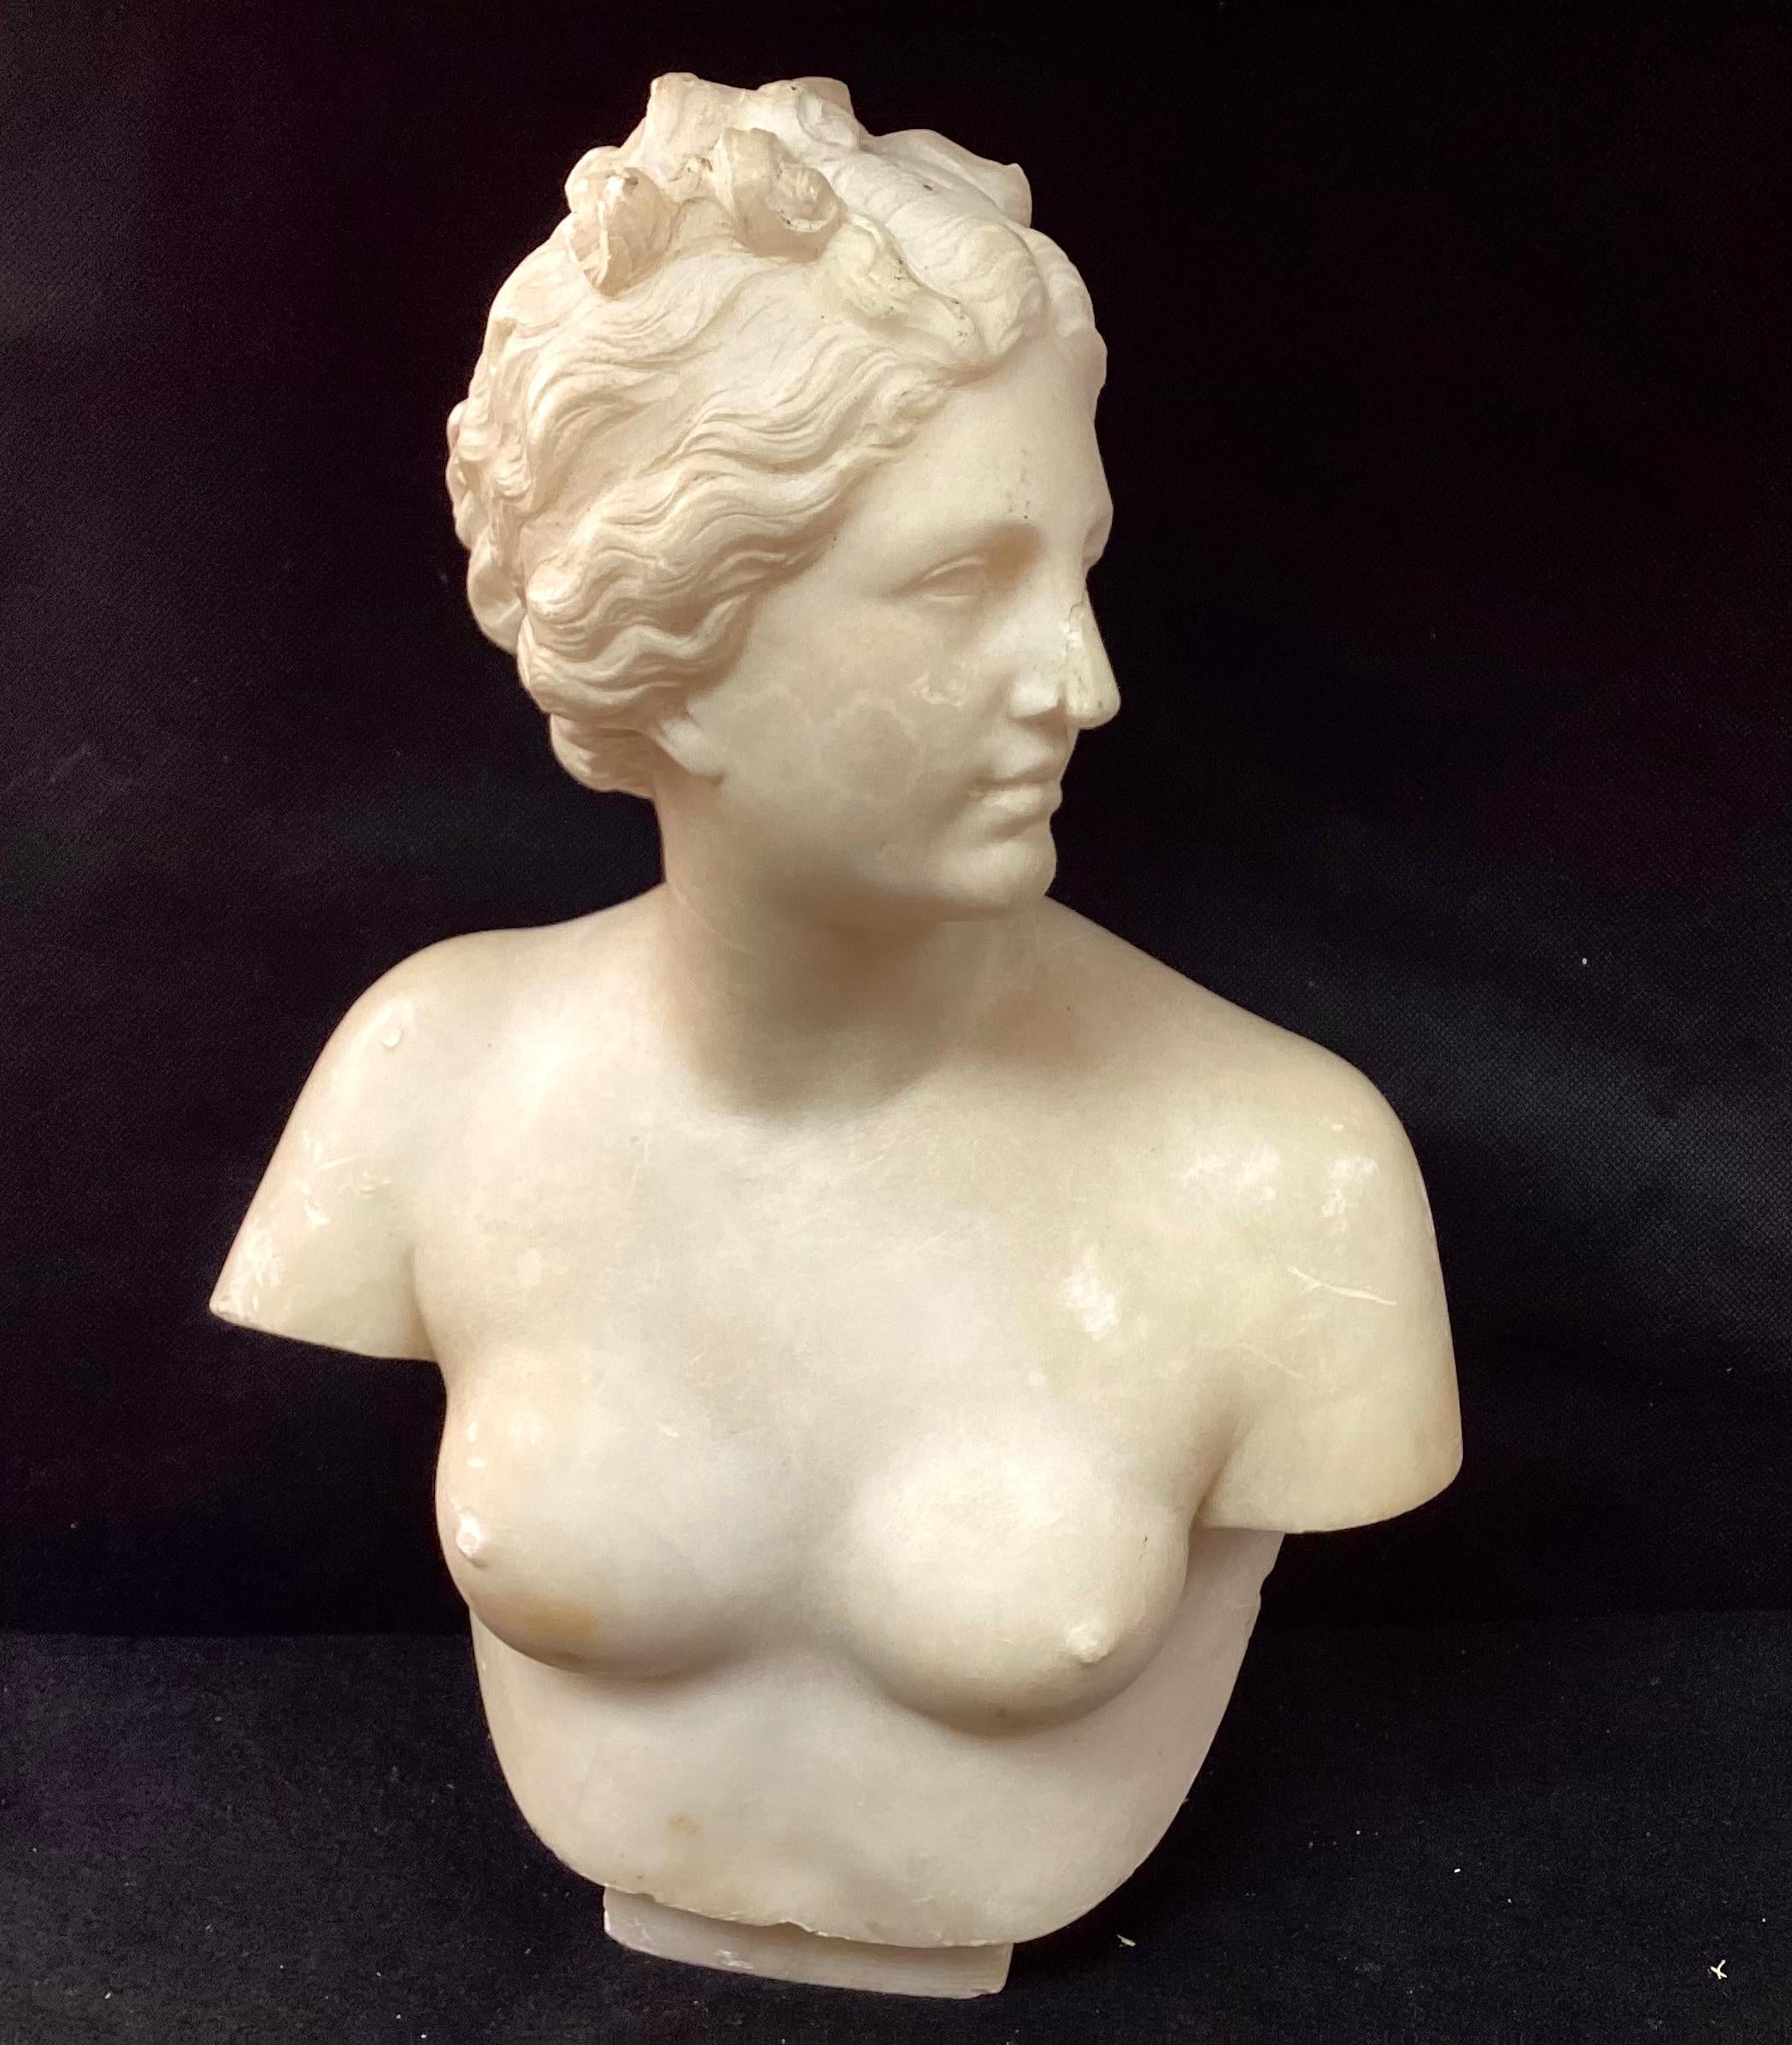 Italienische neoklassizistische Marmorbüste aus dem 19. Jahrhundert, möglicherweise von Aphrodite, die die zeitlosen Ideale von Schönheit, Liebe und Begehren symbolisiert. Wunderschön geschnitzt mit zarten Gesichtszügen.